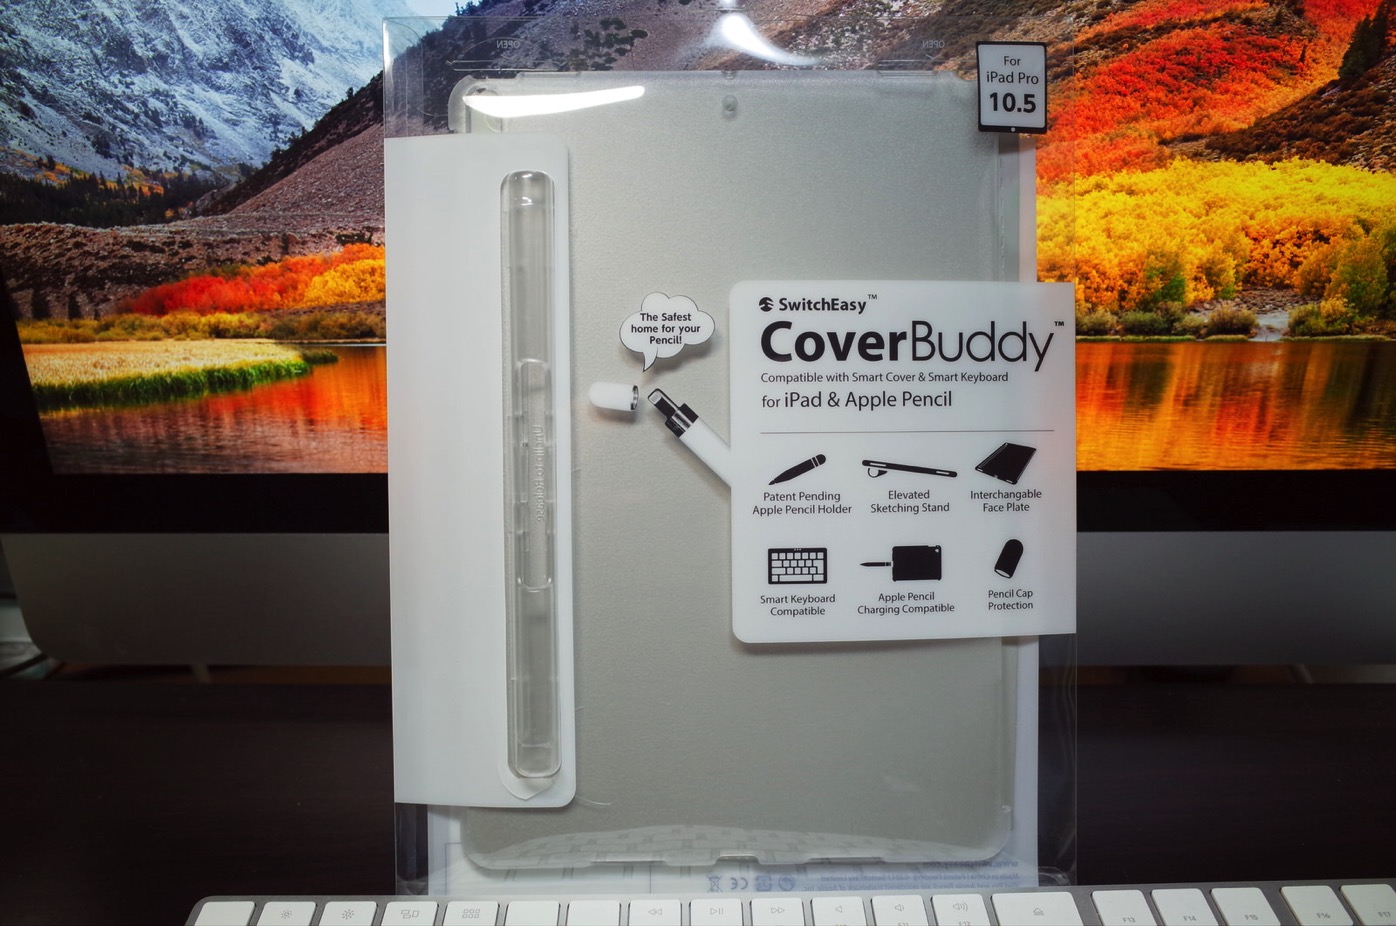 iPad Pro 10.5 ケース SwitchEasy CoverBuddy ハード バック カバー Apple Pencil 収納付き 純正 スマートキーボード 対応-1